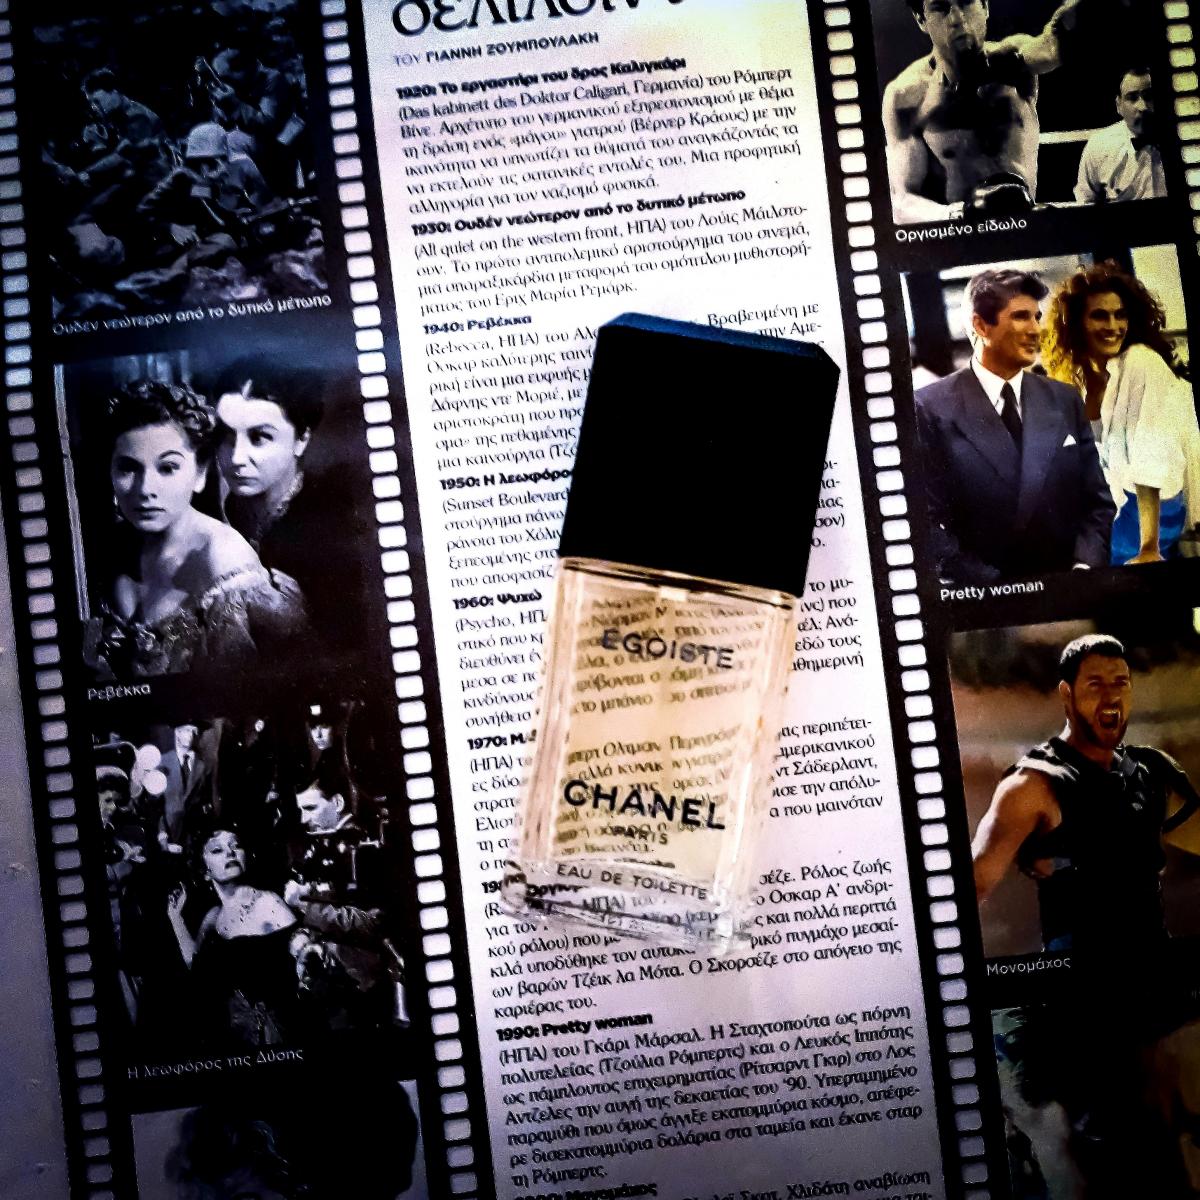 Egoiste Chanel - una fragranza da uomo 1990